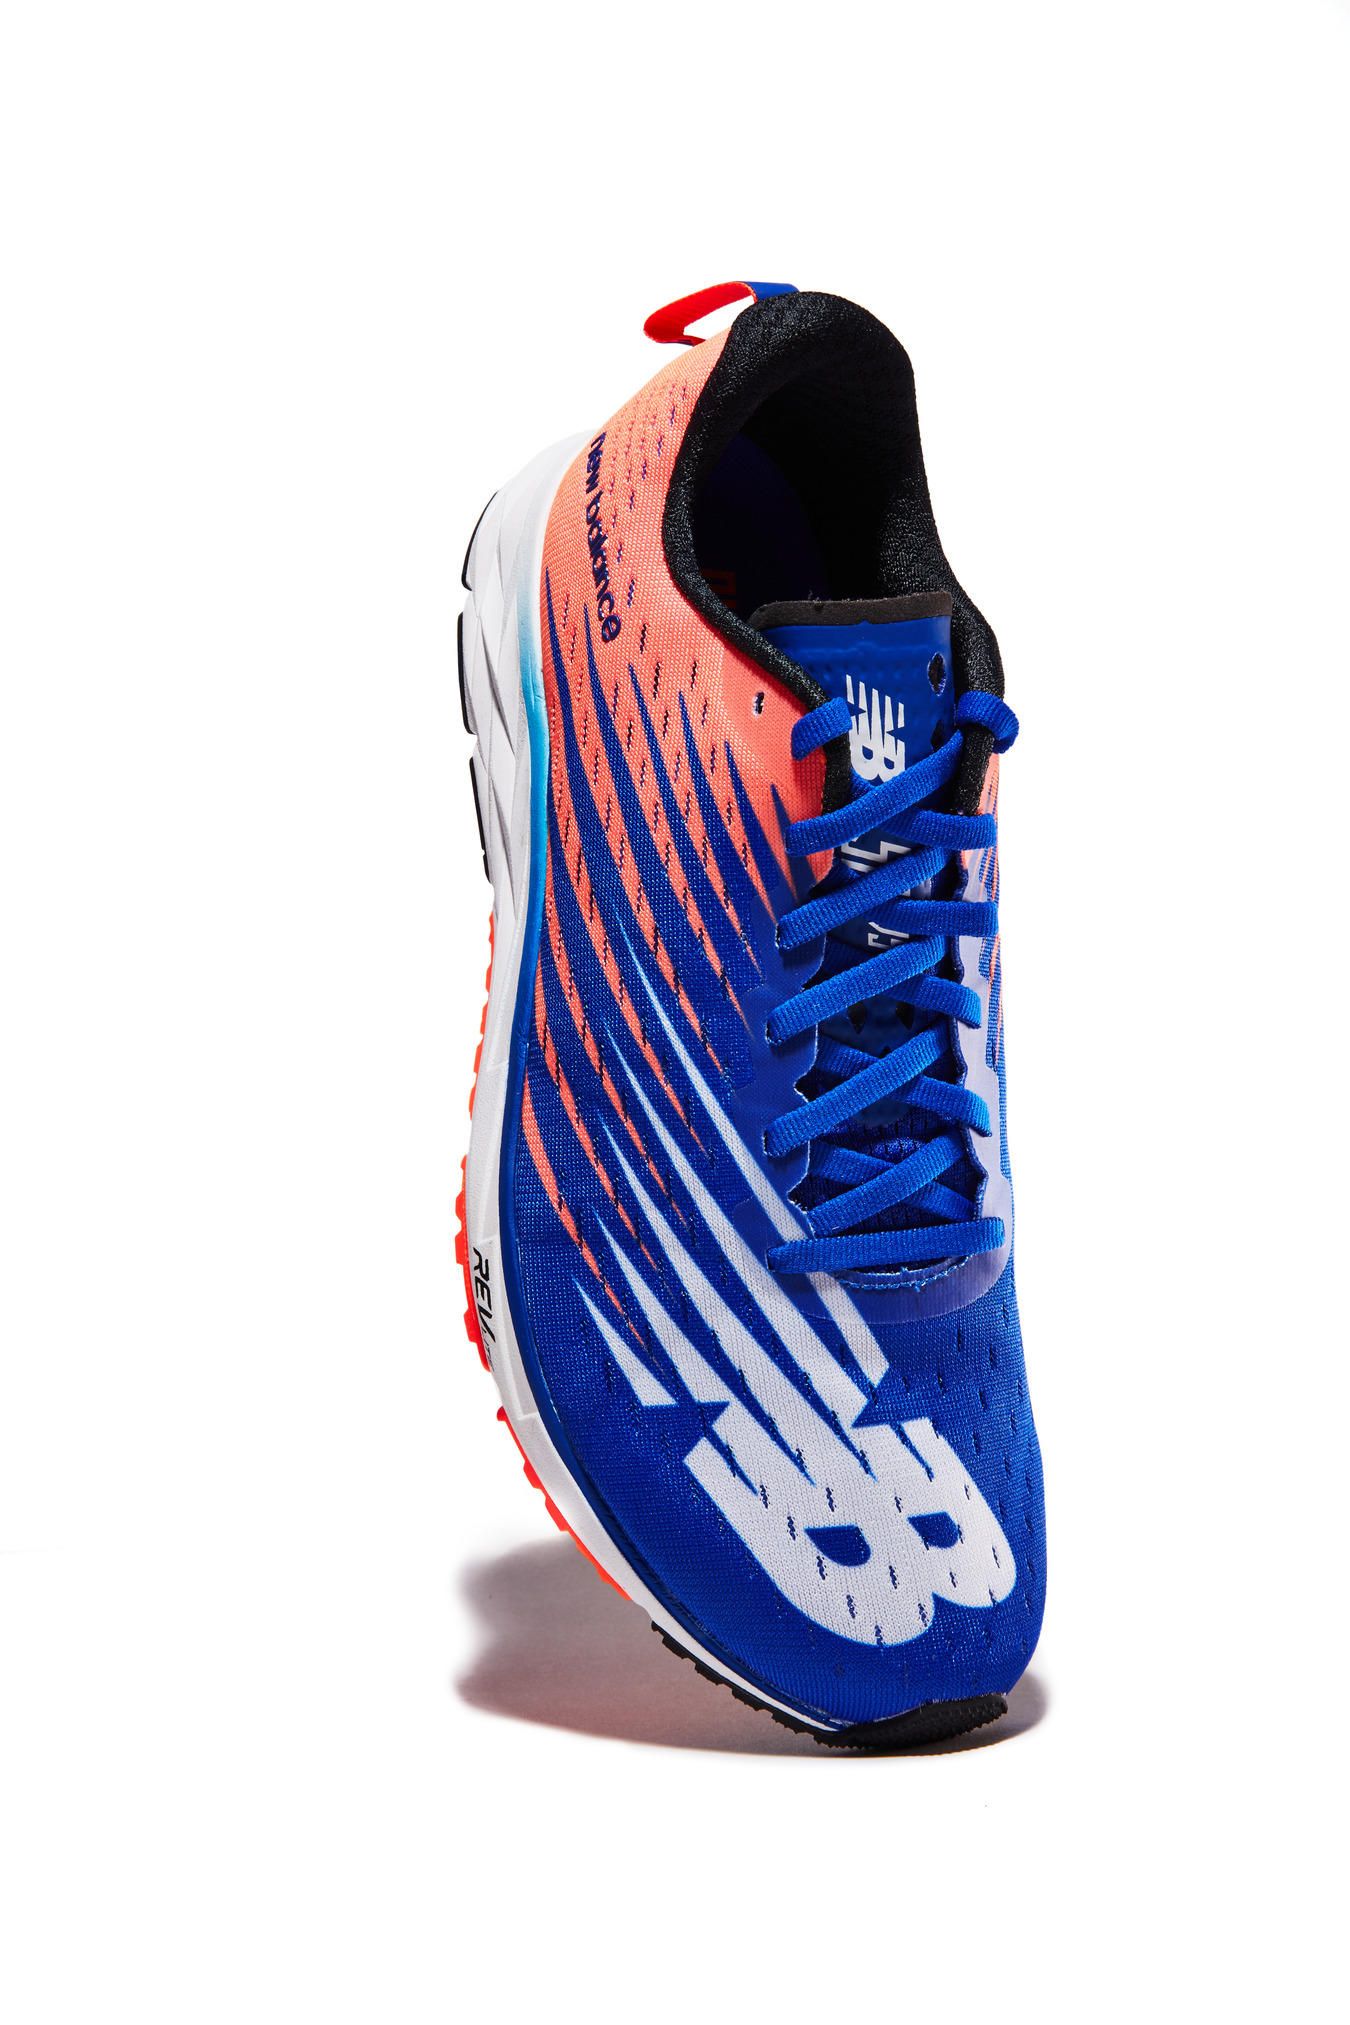 Shoe, Footwear, Cobalt blue, Blue, Orange, Sneakers, Electric blue, Walking shoe, Athletic shoe, Outdoor shoe, 